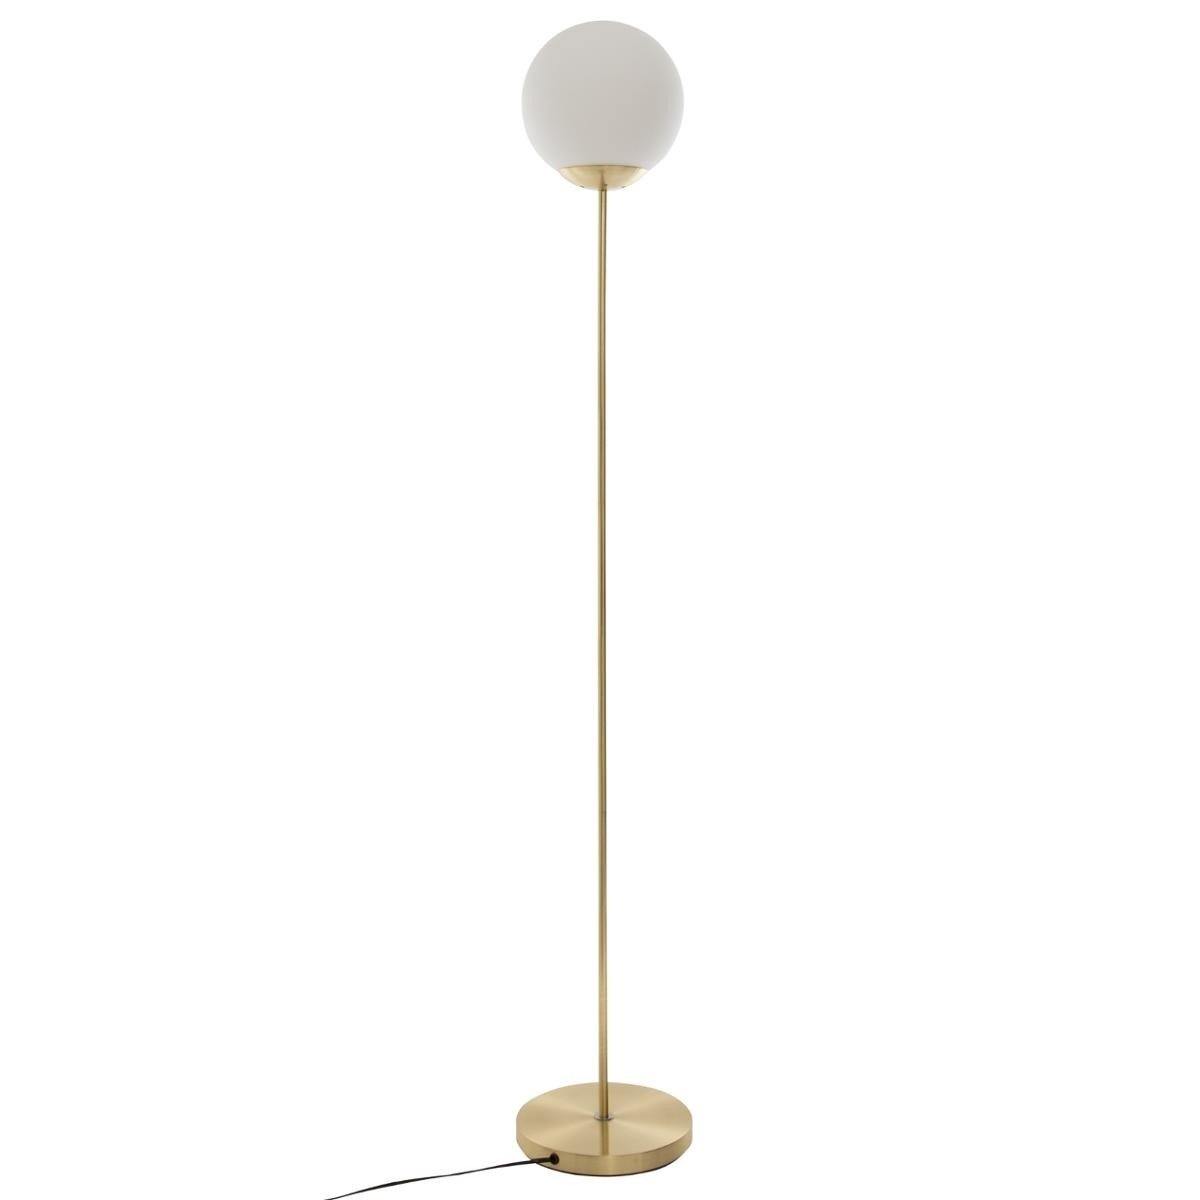 Lampa stojąca z okrągłym kloszem, metalowa, 134 cm